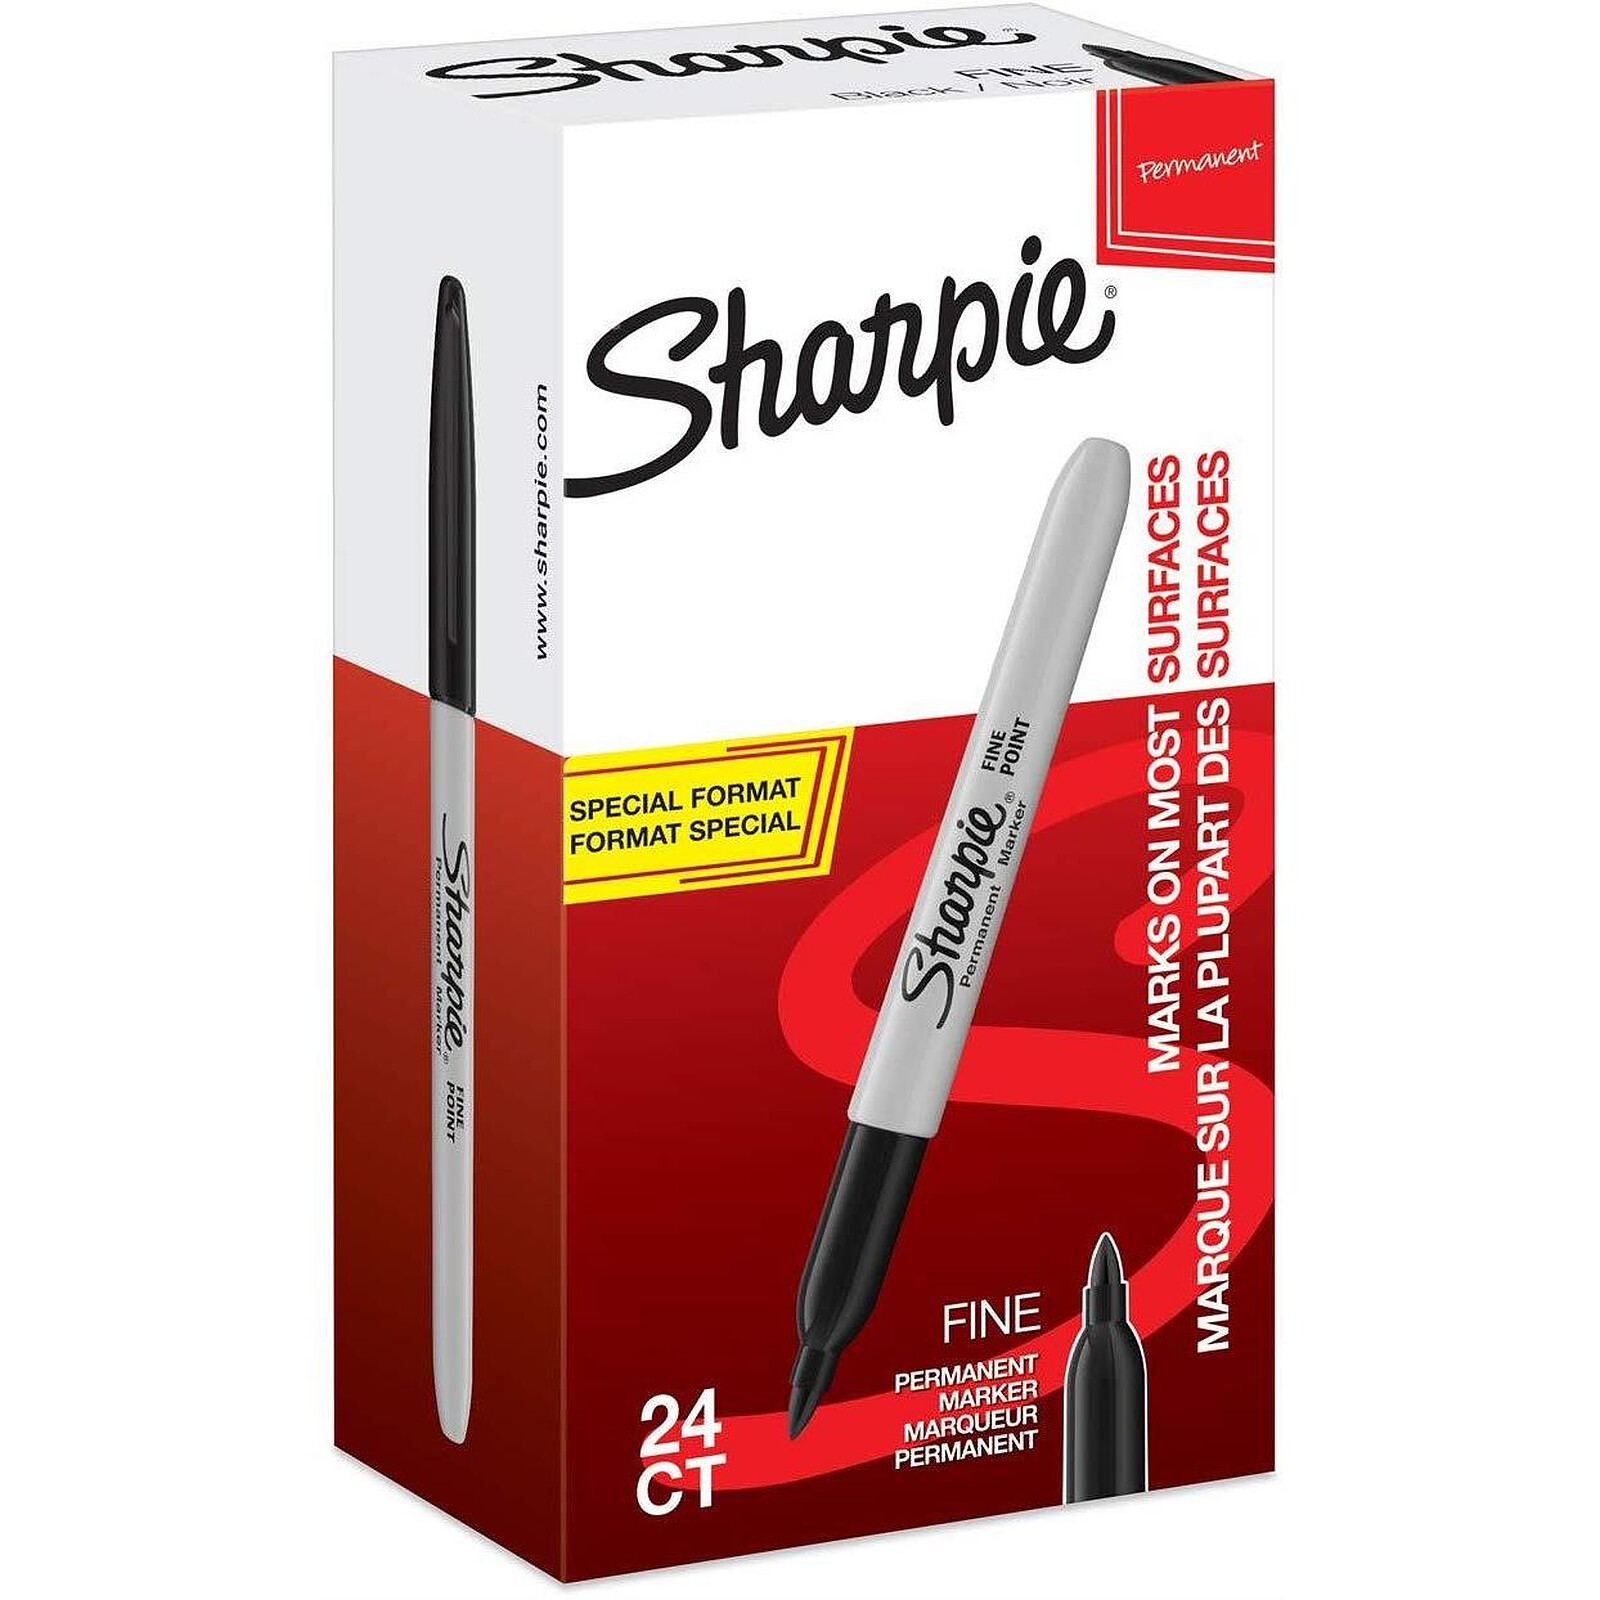 SHARPIE Marqueur permanent FINE, Value pack, noir - Marqueur - LDLC